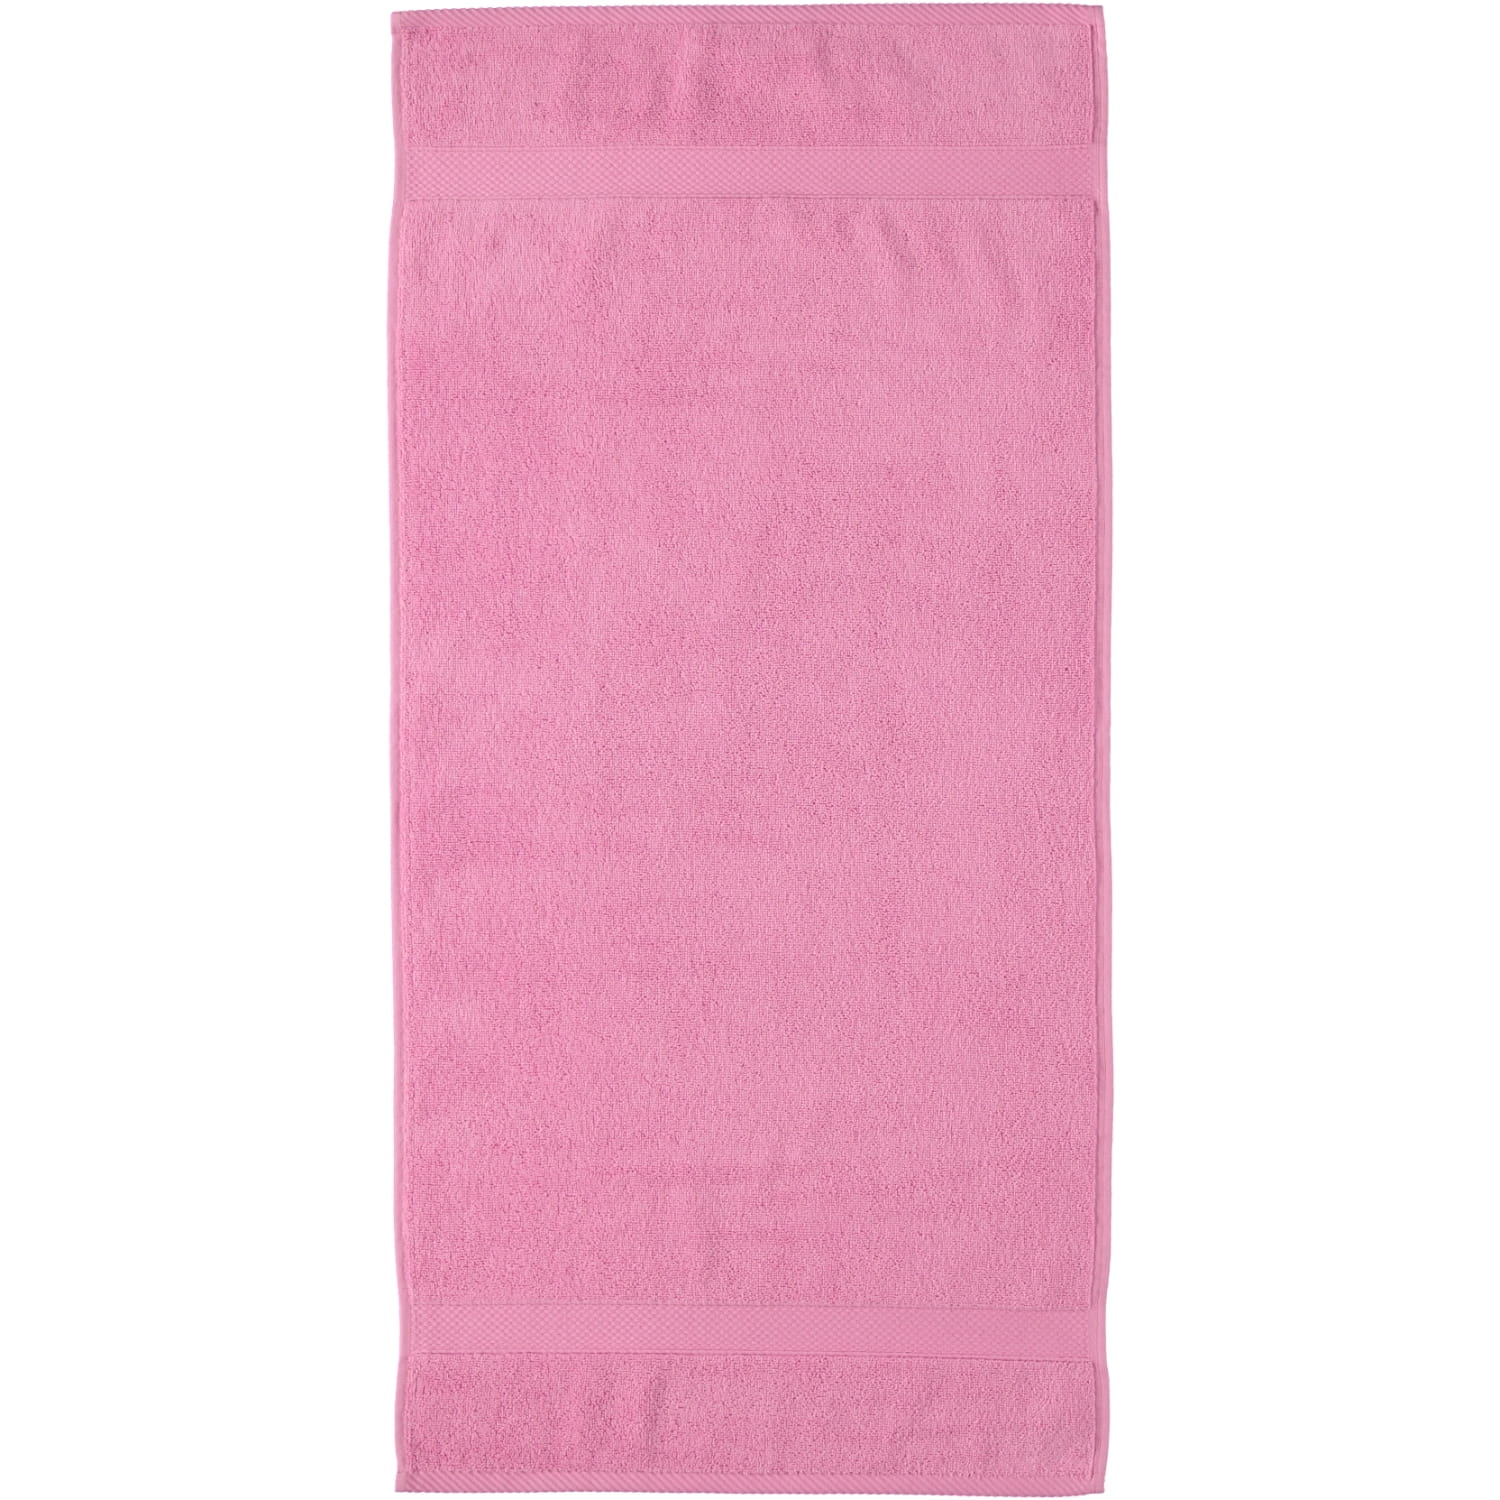 Egeria Diamant - Farbe: (02010450) | Marken 723 - Egeria pink candy | Egeria Handtücher 